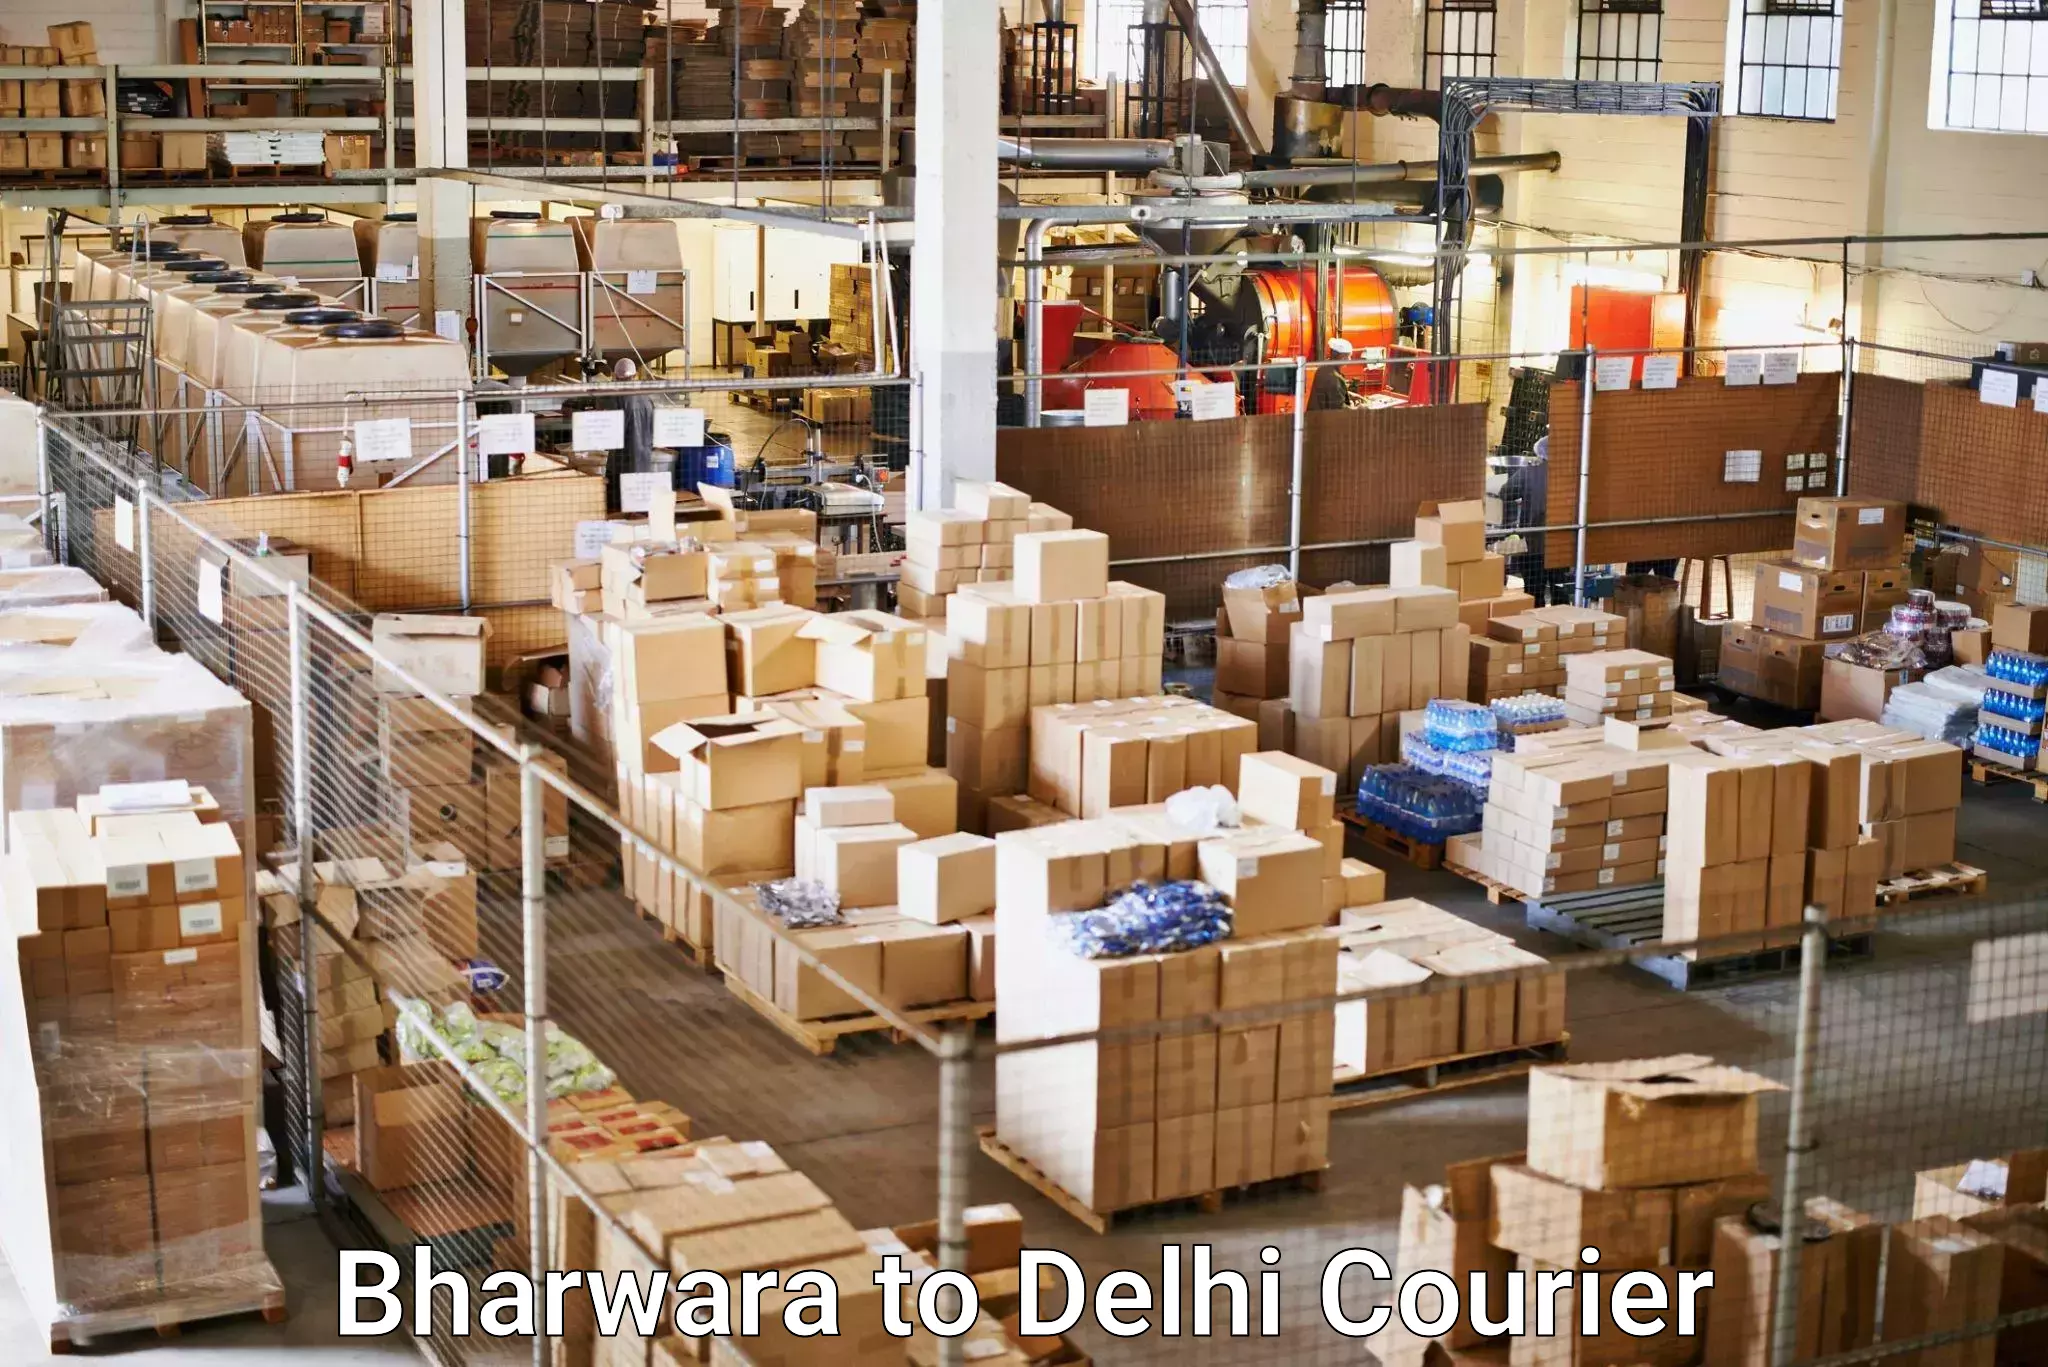 Ground shipping Bharwara to Jawaharlal Nehru University New Delhi